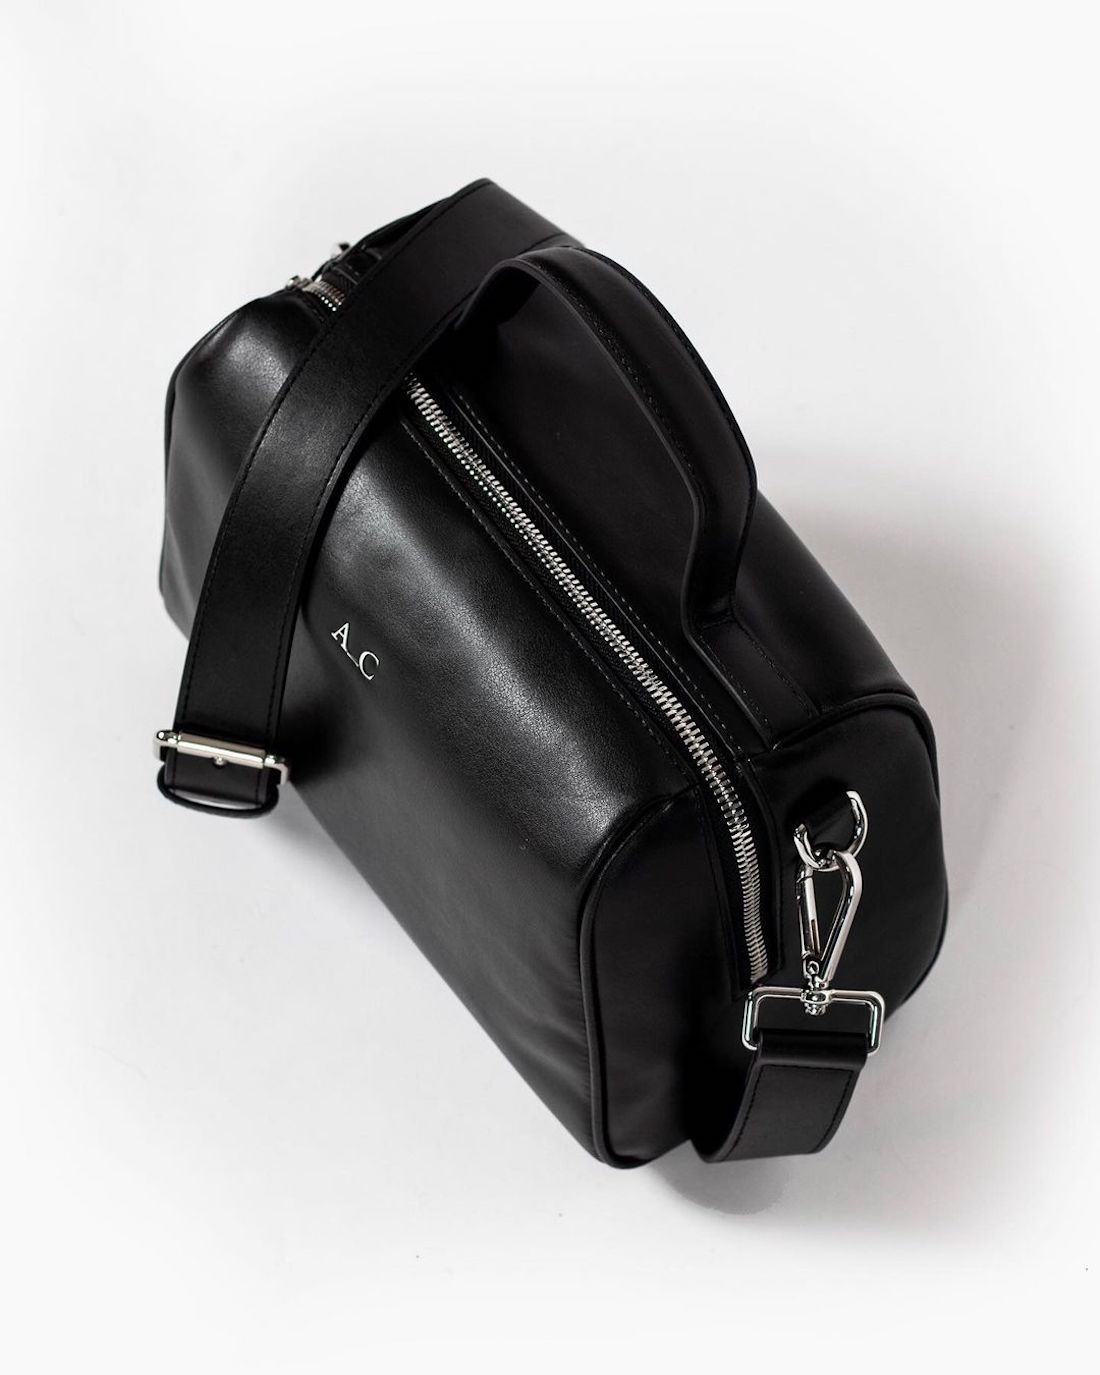 A black vegan leather handbag sits unopened.